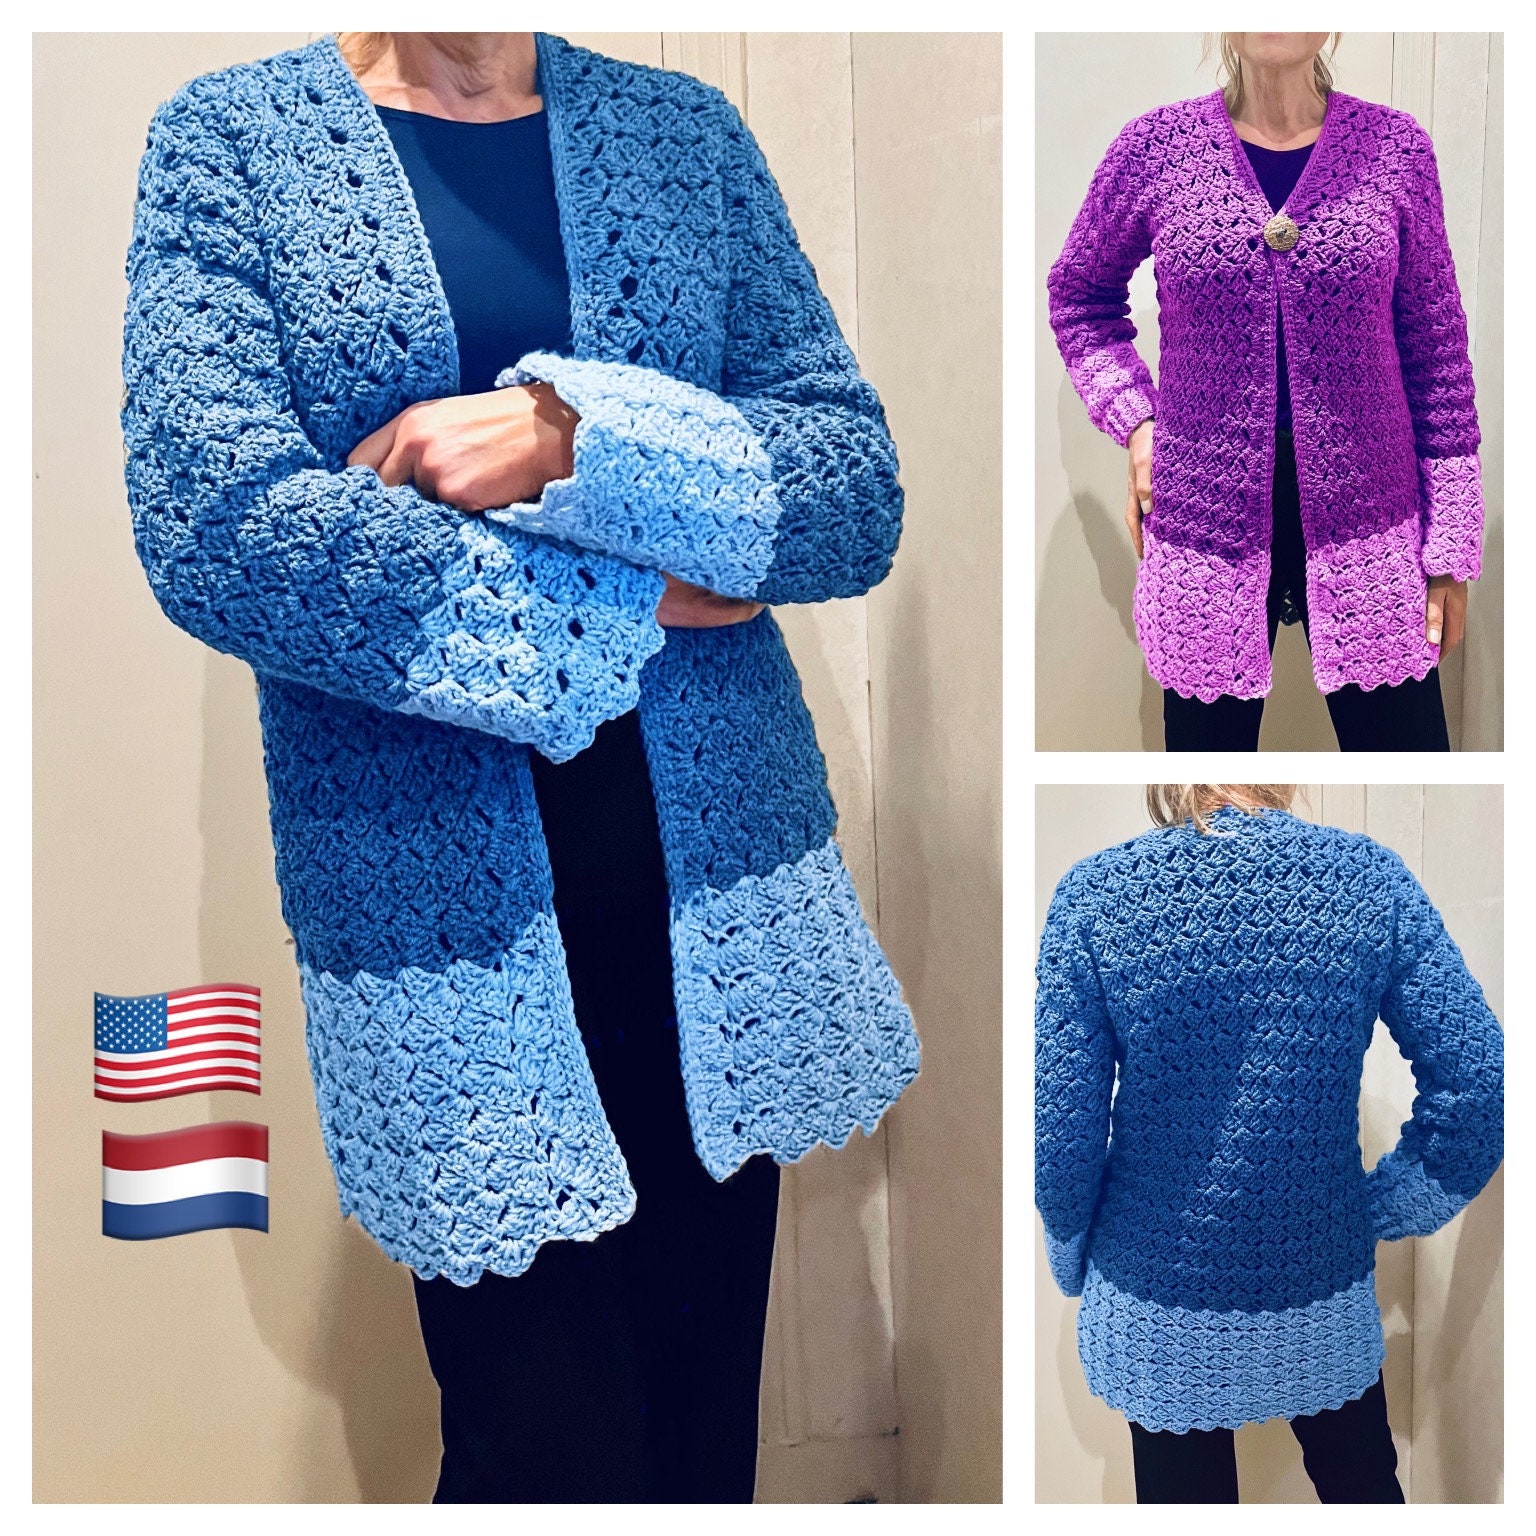 Vuittamins Two-Tone Sweater - Luxury Knitwear - Ready to Wear, Women  1A9252